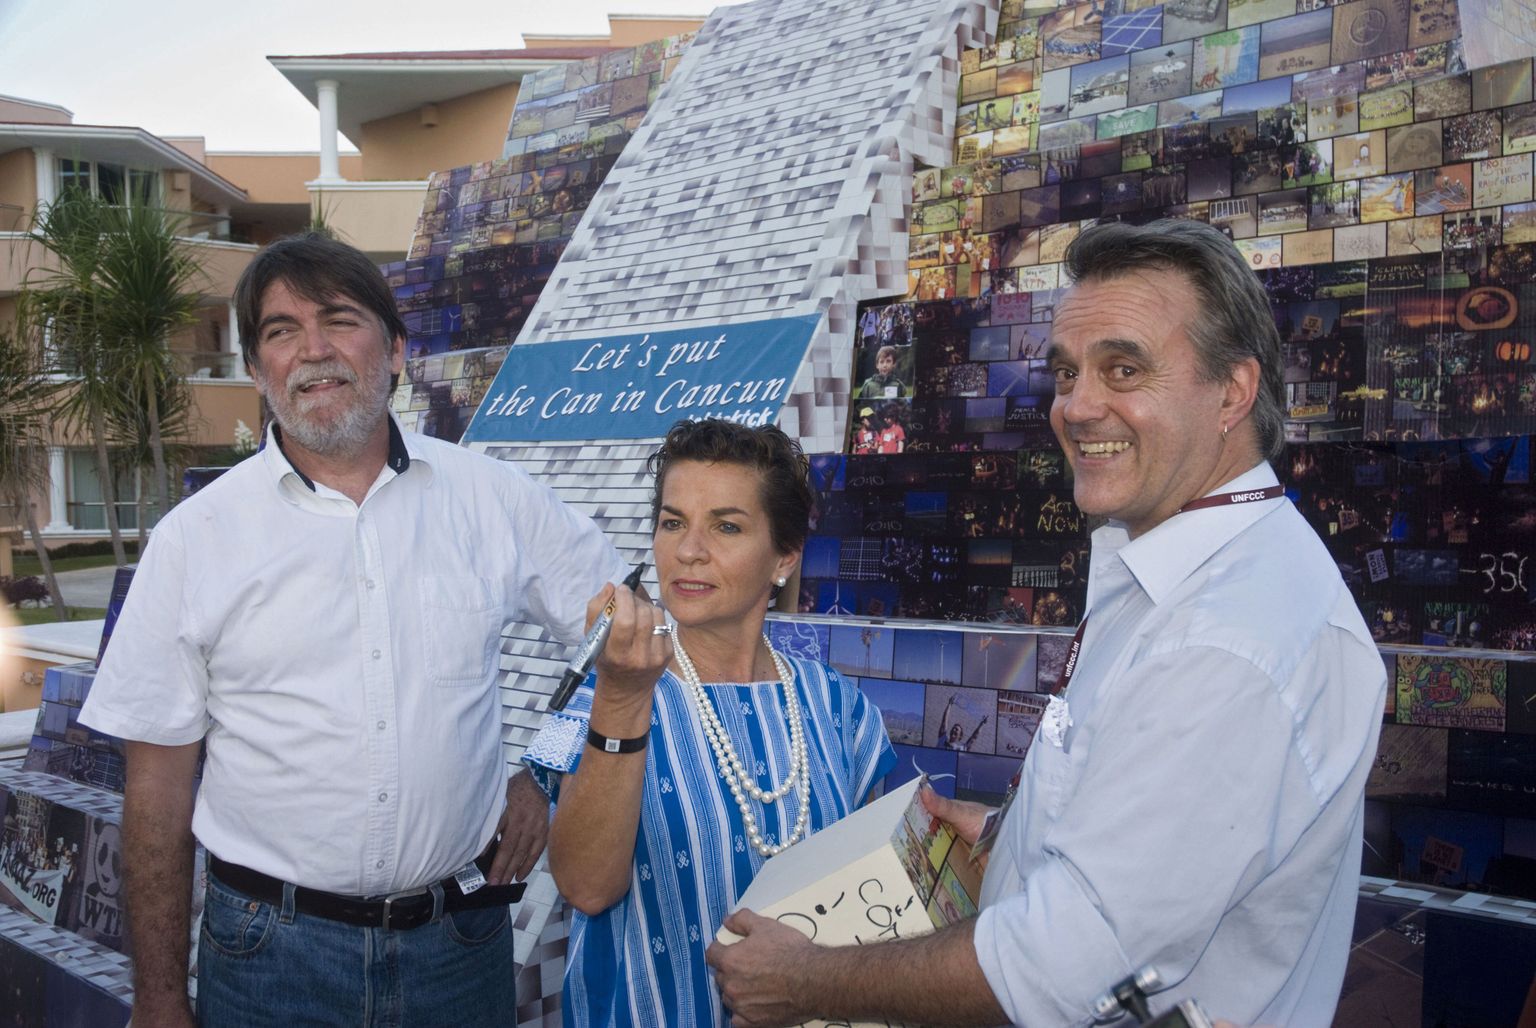 Kliimakonverentsil osalejad:  ÜRO kliimamuutuse konventsiooni (UNFCCC) juht Christiana Figueres (keskel),organisatsiooni TckTckTck esindaja Paul Horsman (paremal) ja Global Campaign for Climatic Action esindaja Raul Benet (vasakul)